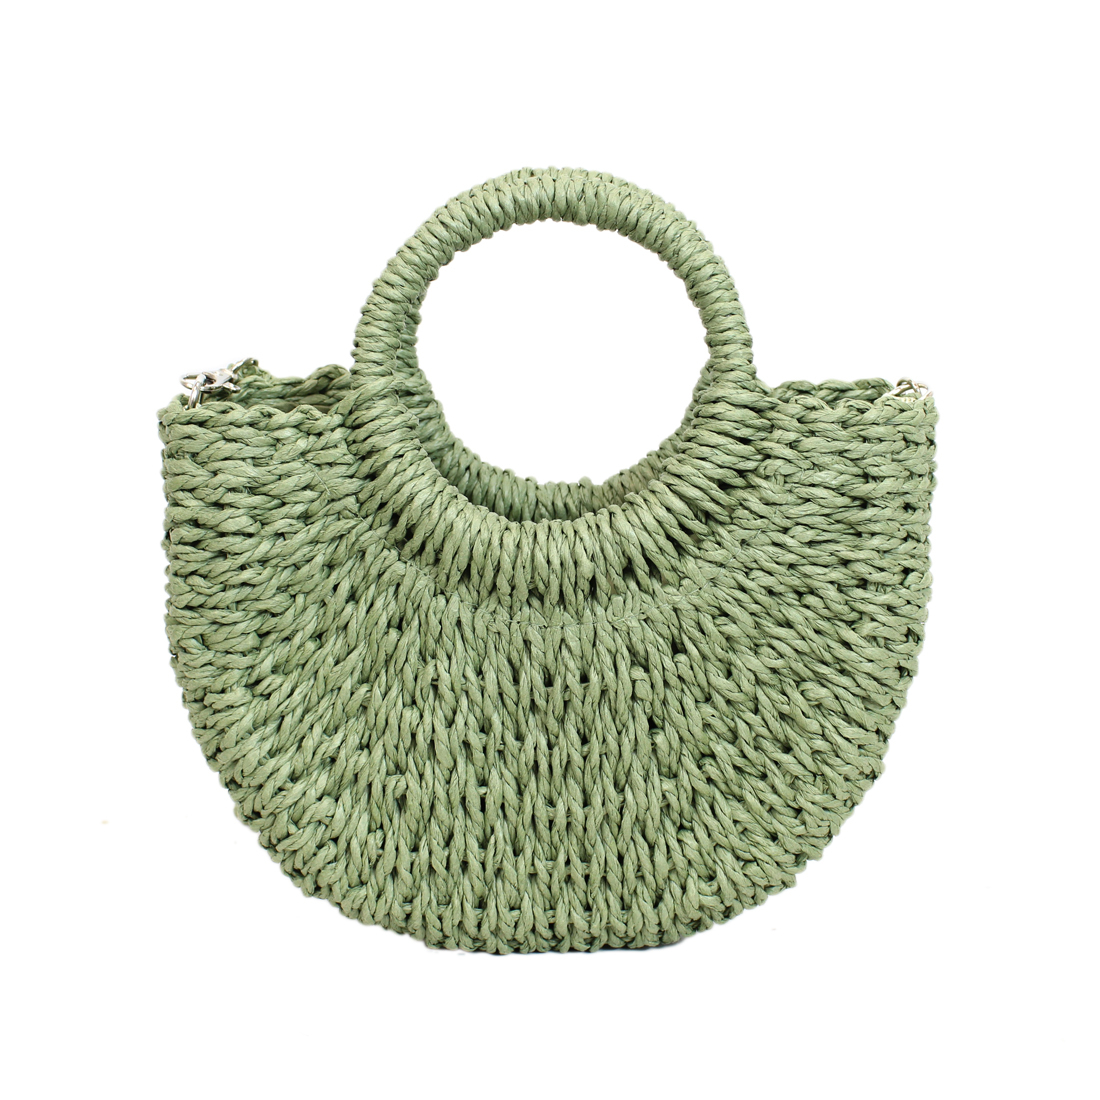 Straw plain half circle handbag